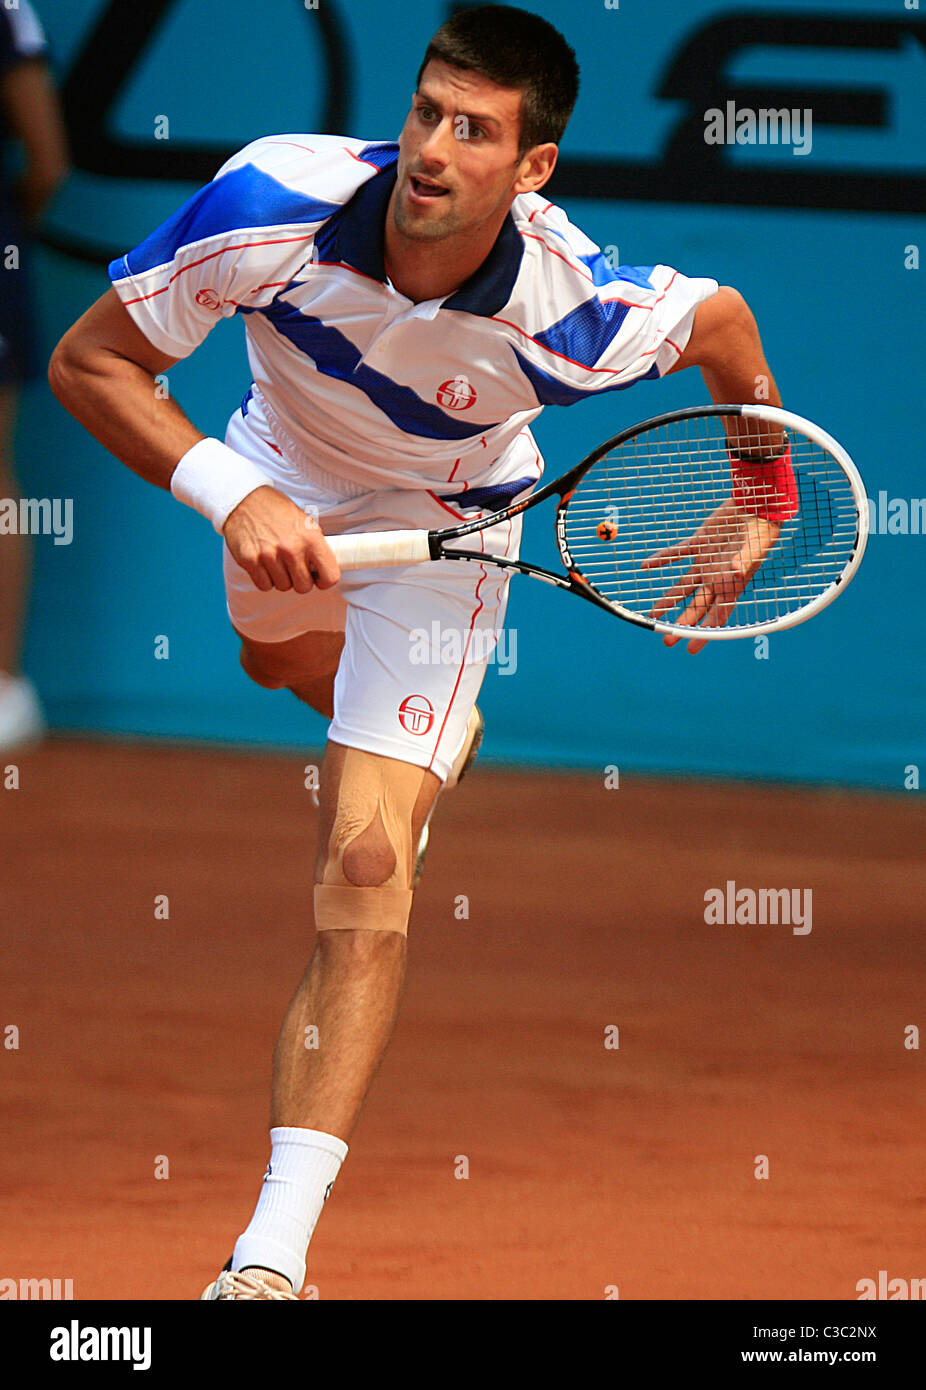 05.05.2011 - Novak Djokovic (SRB) in Aktion gegen Guillermo García-López (ESP), 3. Runde der Mutua Madrilena Madrid Open, Stockfoto